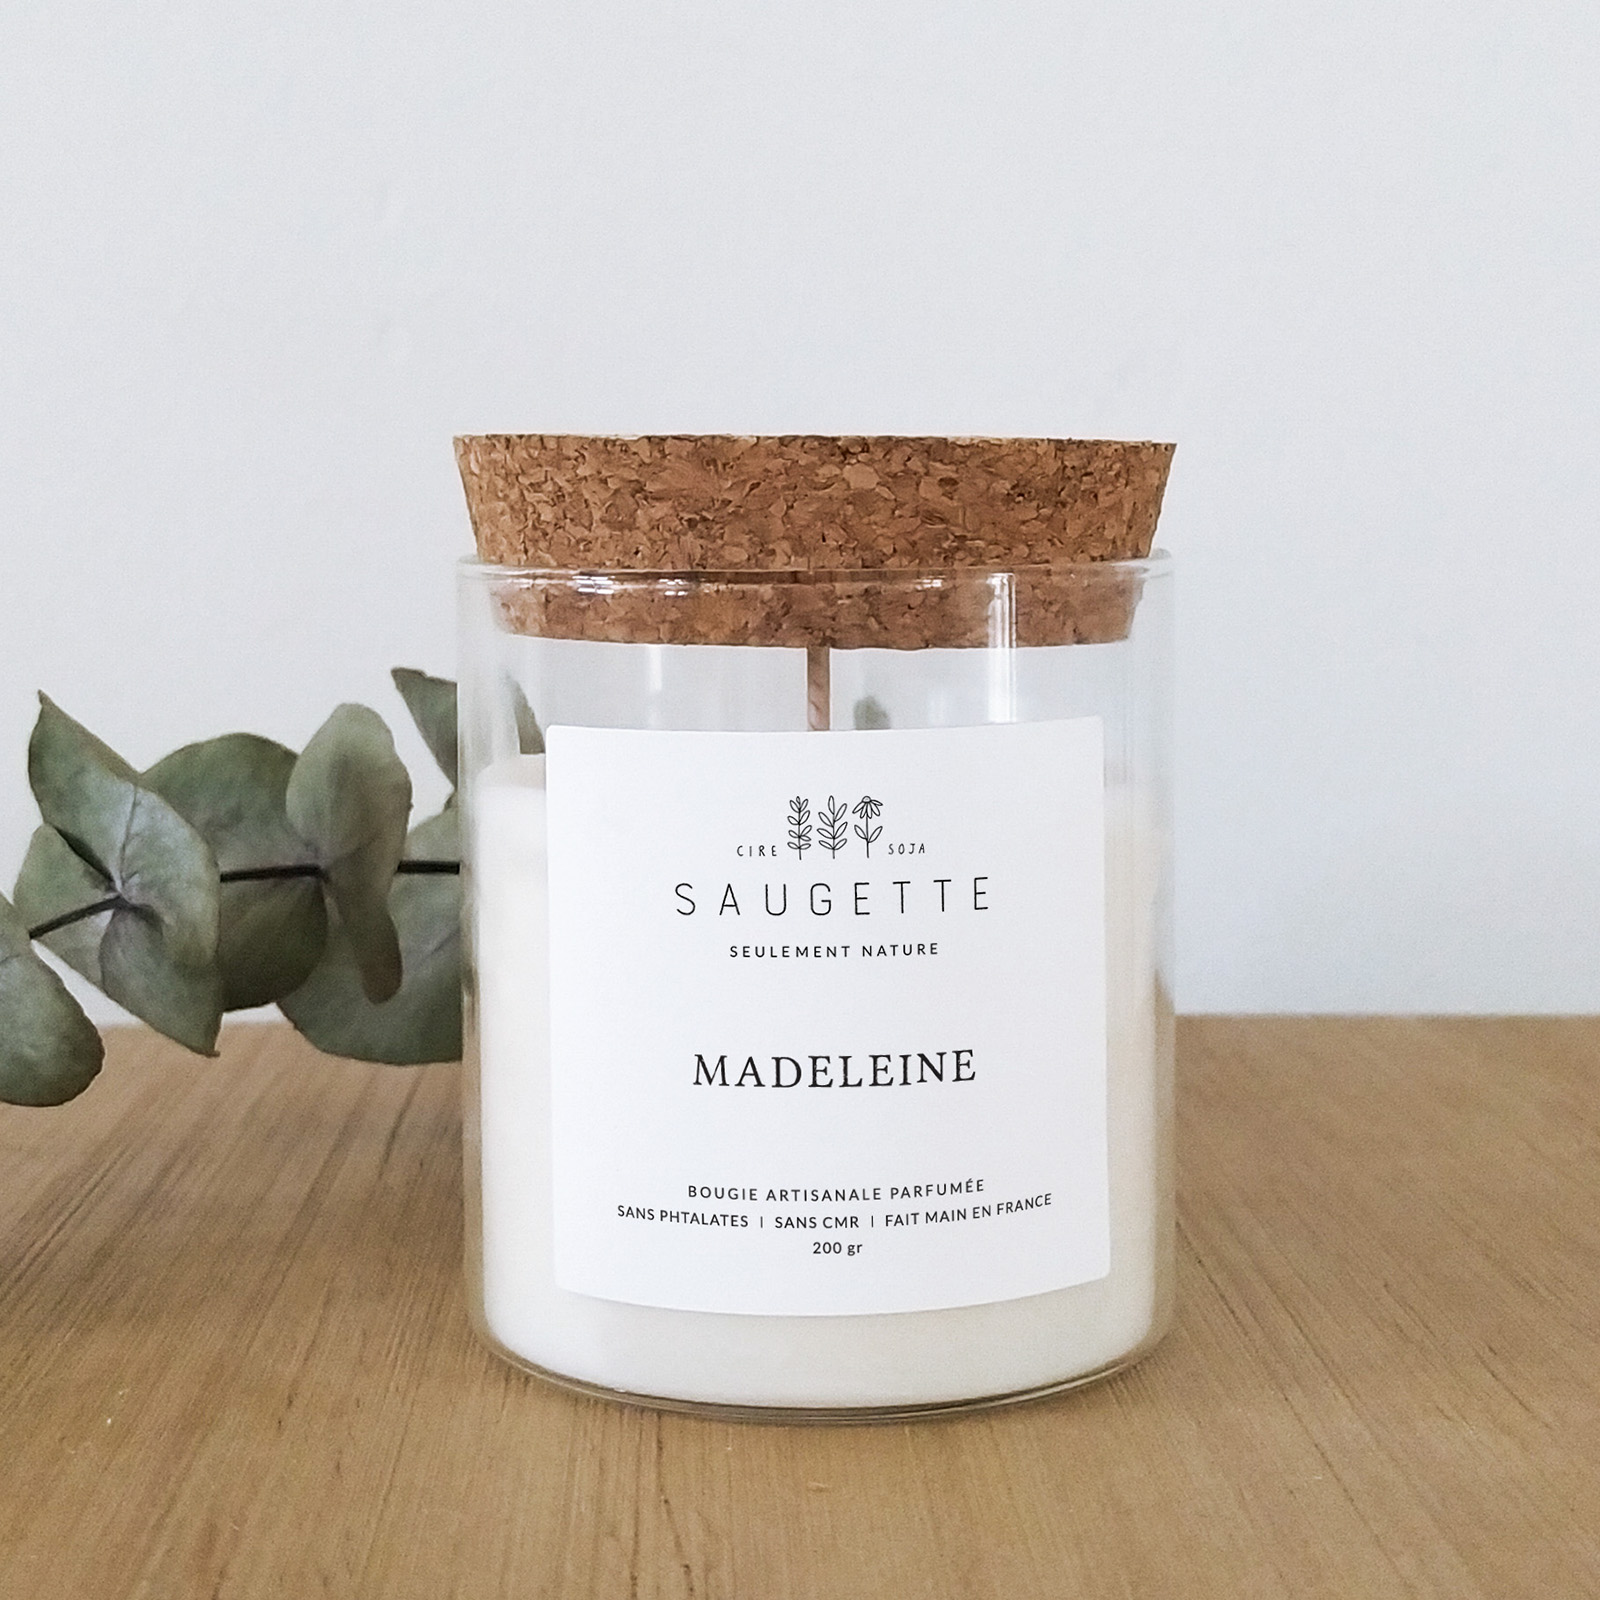 Madeleine - bougie artisanale parfumée